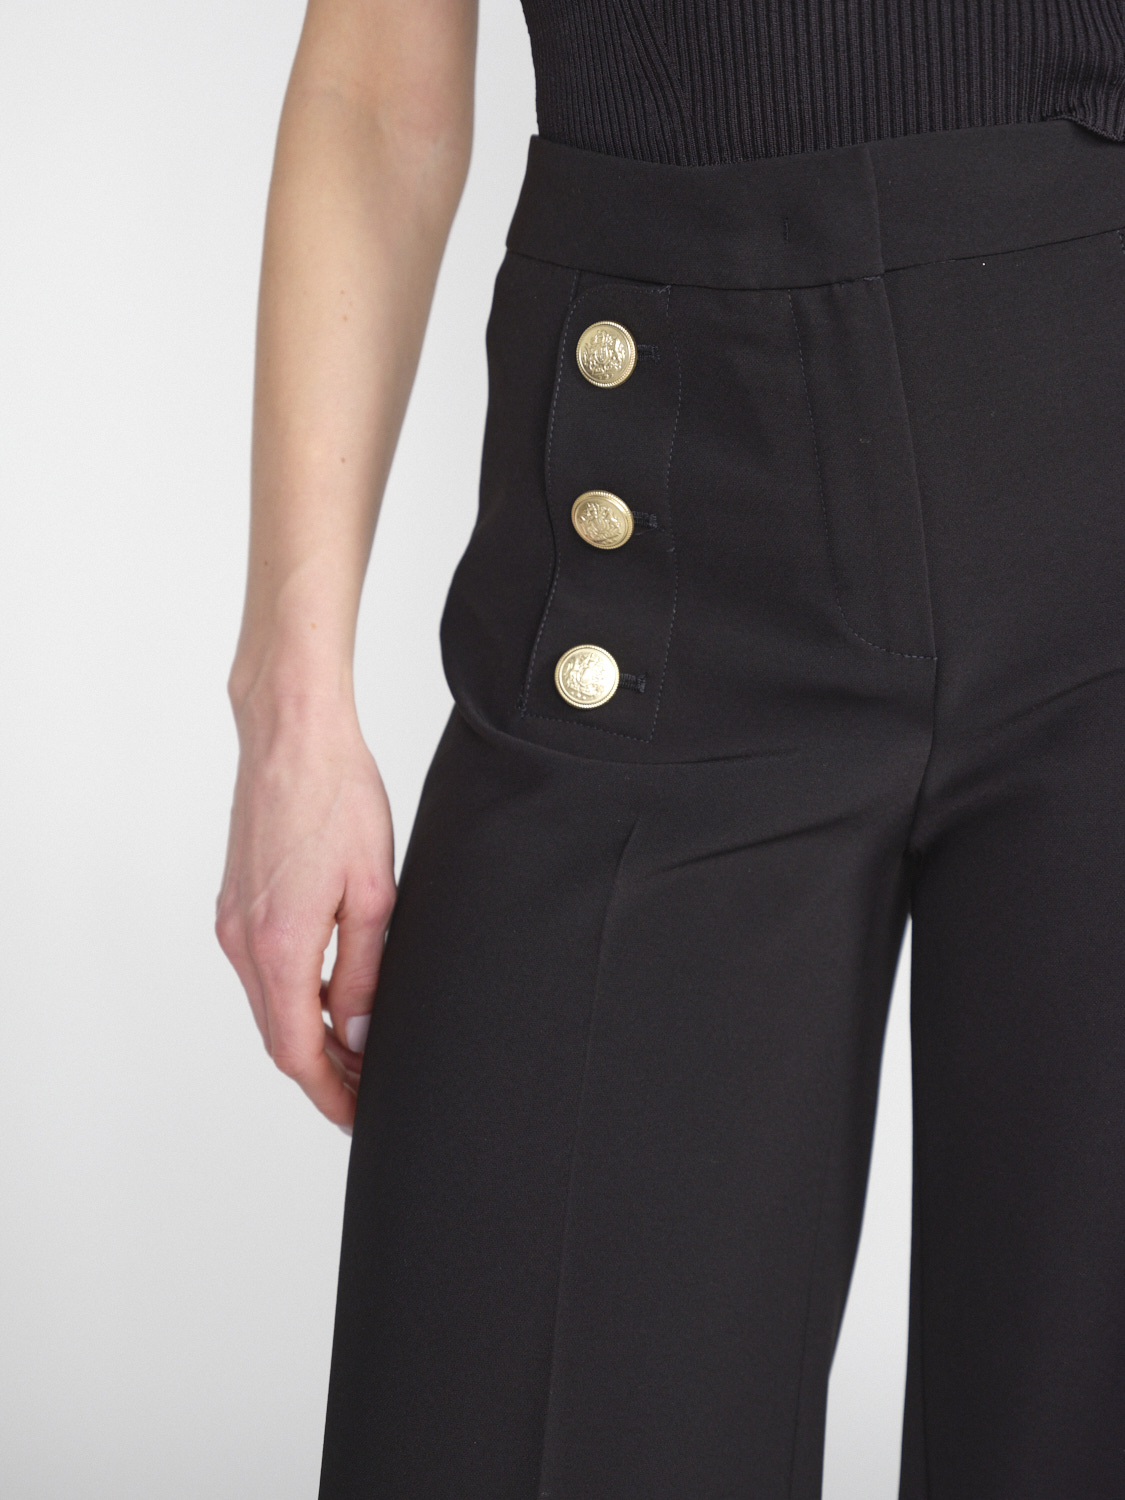 Seductive Bridget - Pantaloni elasticizzati con dettagli in bottoni dorati   nero 36